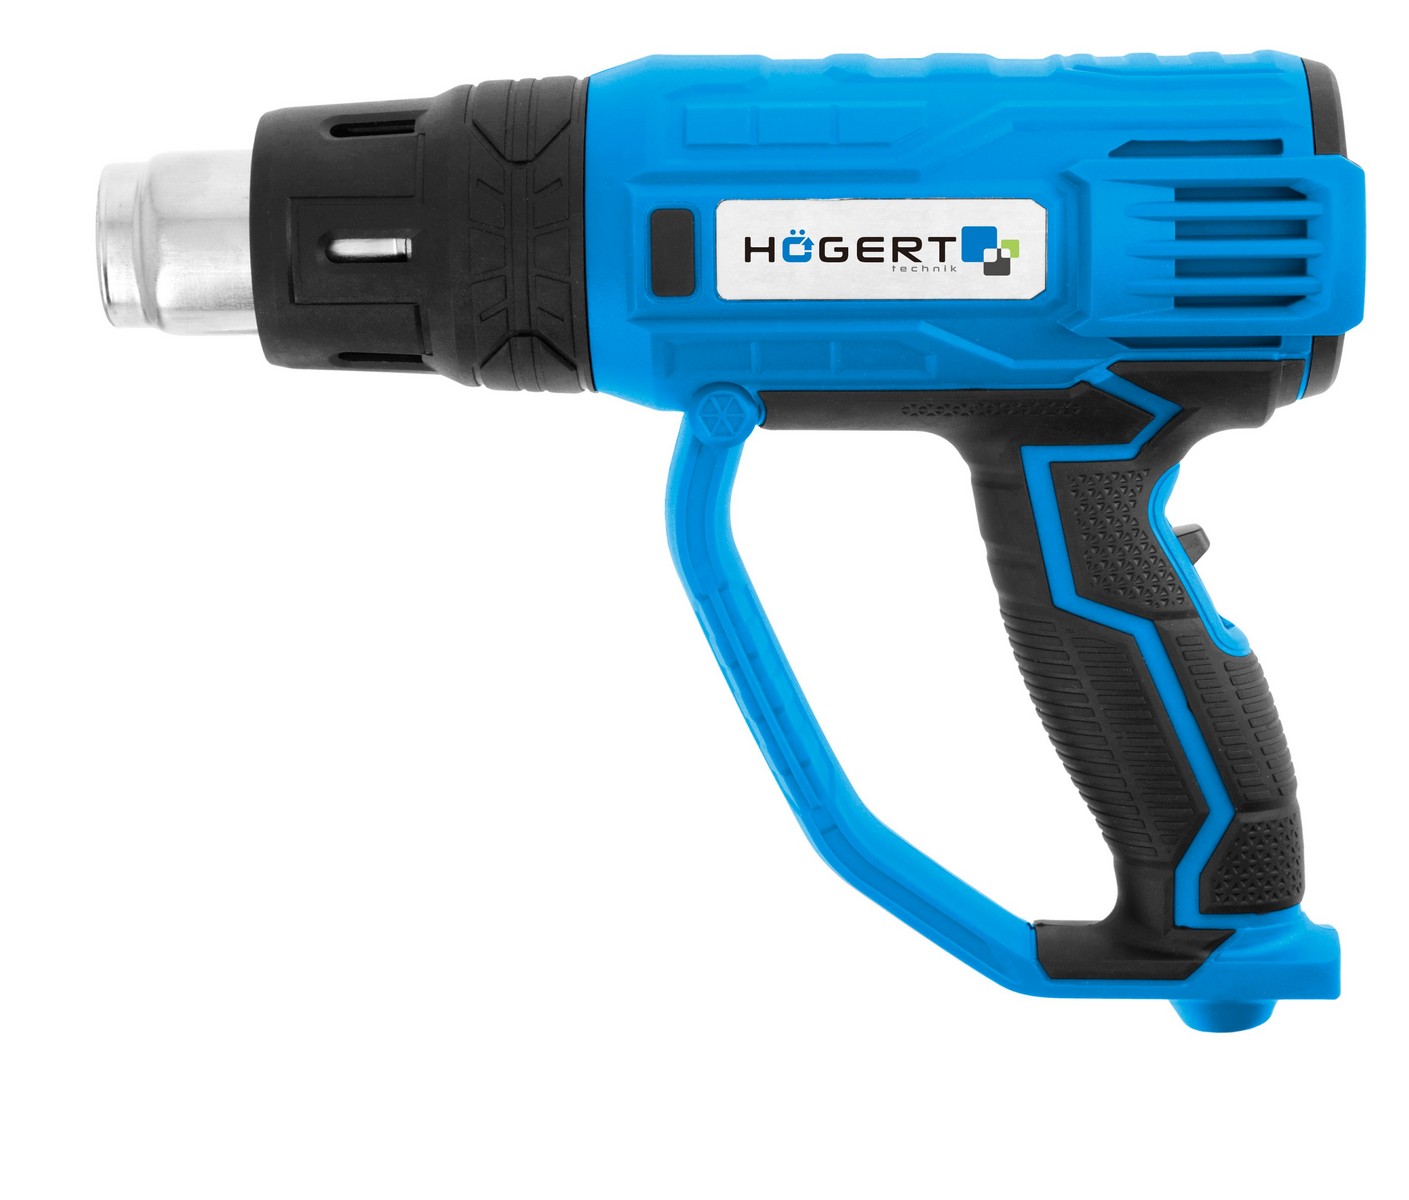 Hogert HT2C551 topltni vazdušni pištolj |2000w| tip 2 (HT2C551)